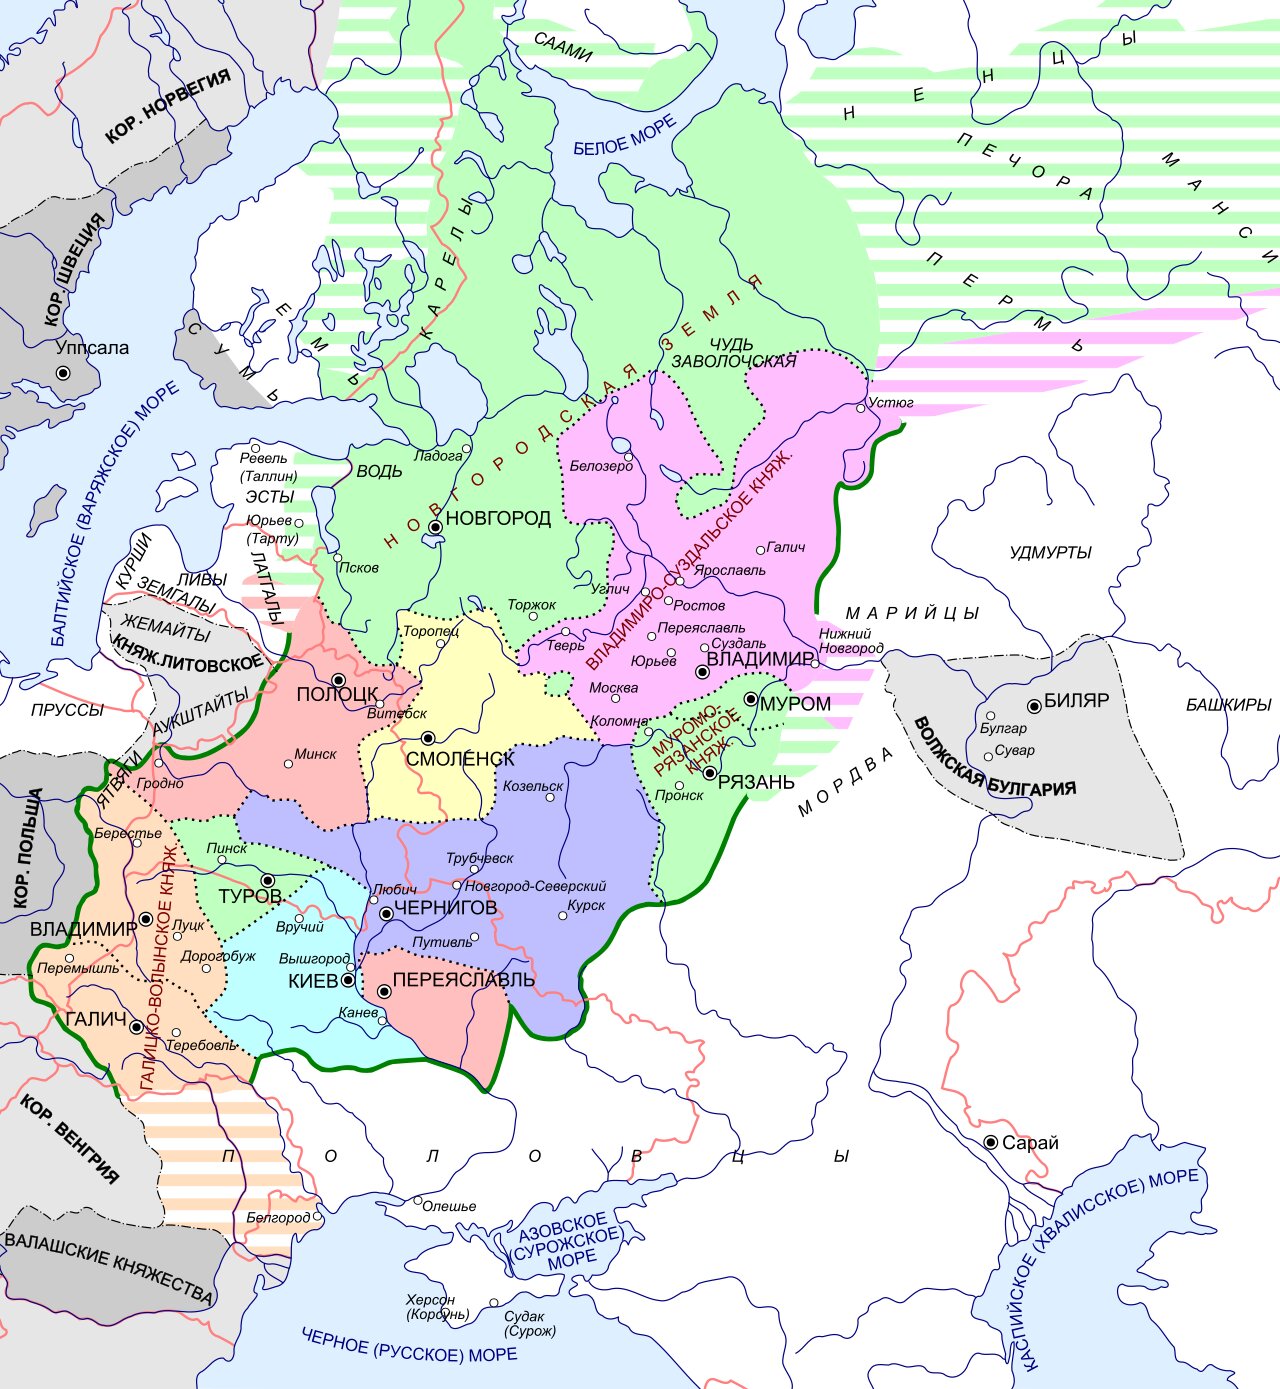 Русь в 1237 году накануне монгольского нашествия.